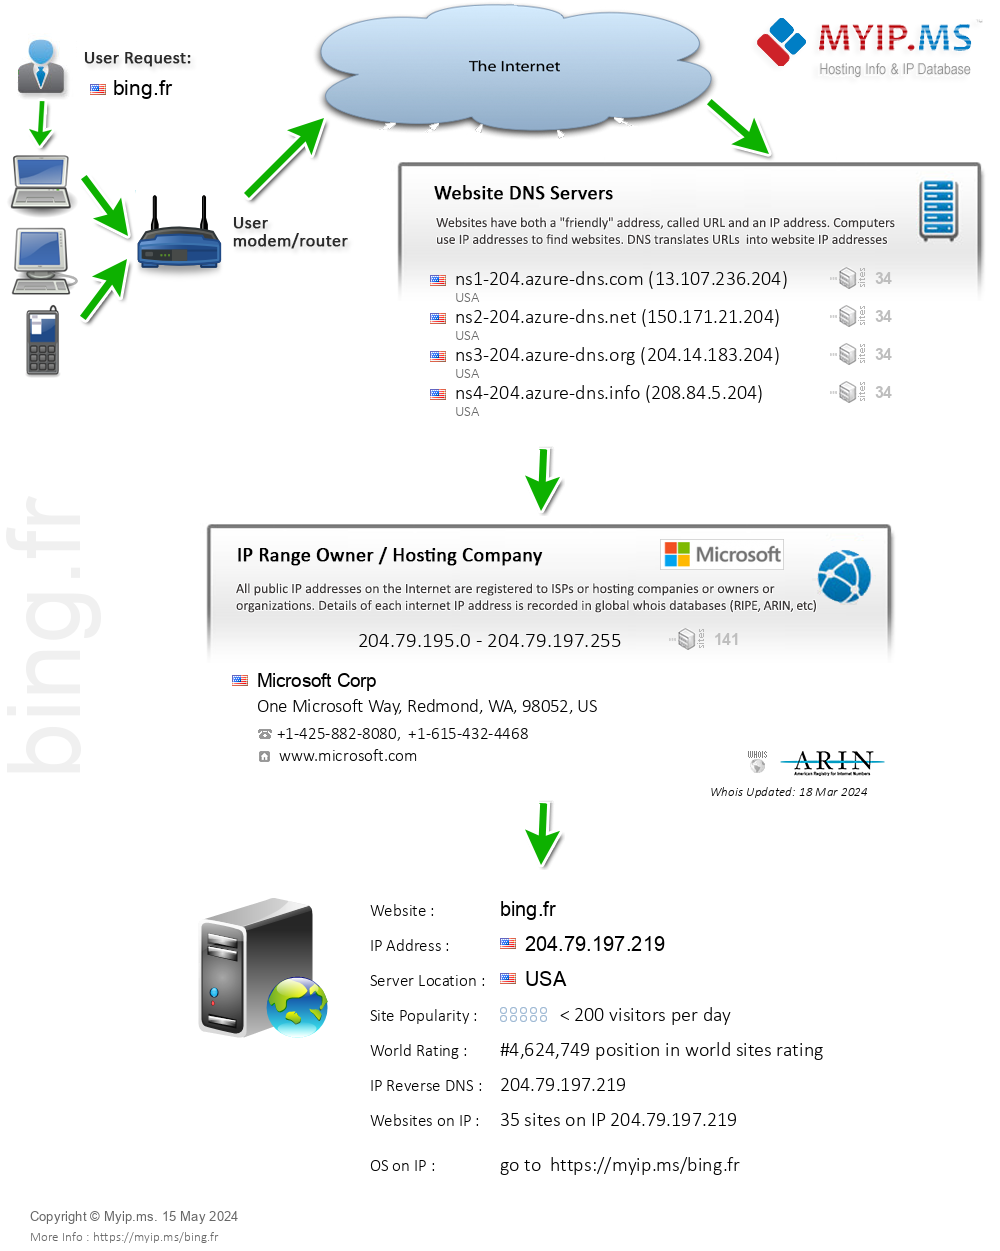 Bing.fr - Website Hosting Visual IP Diagram